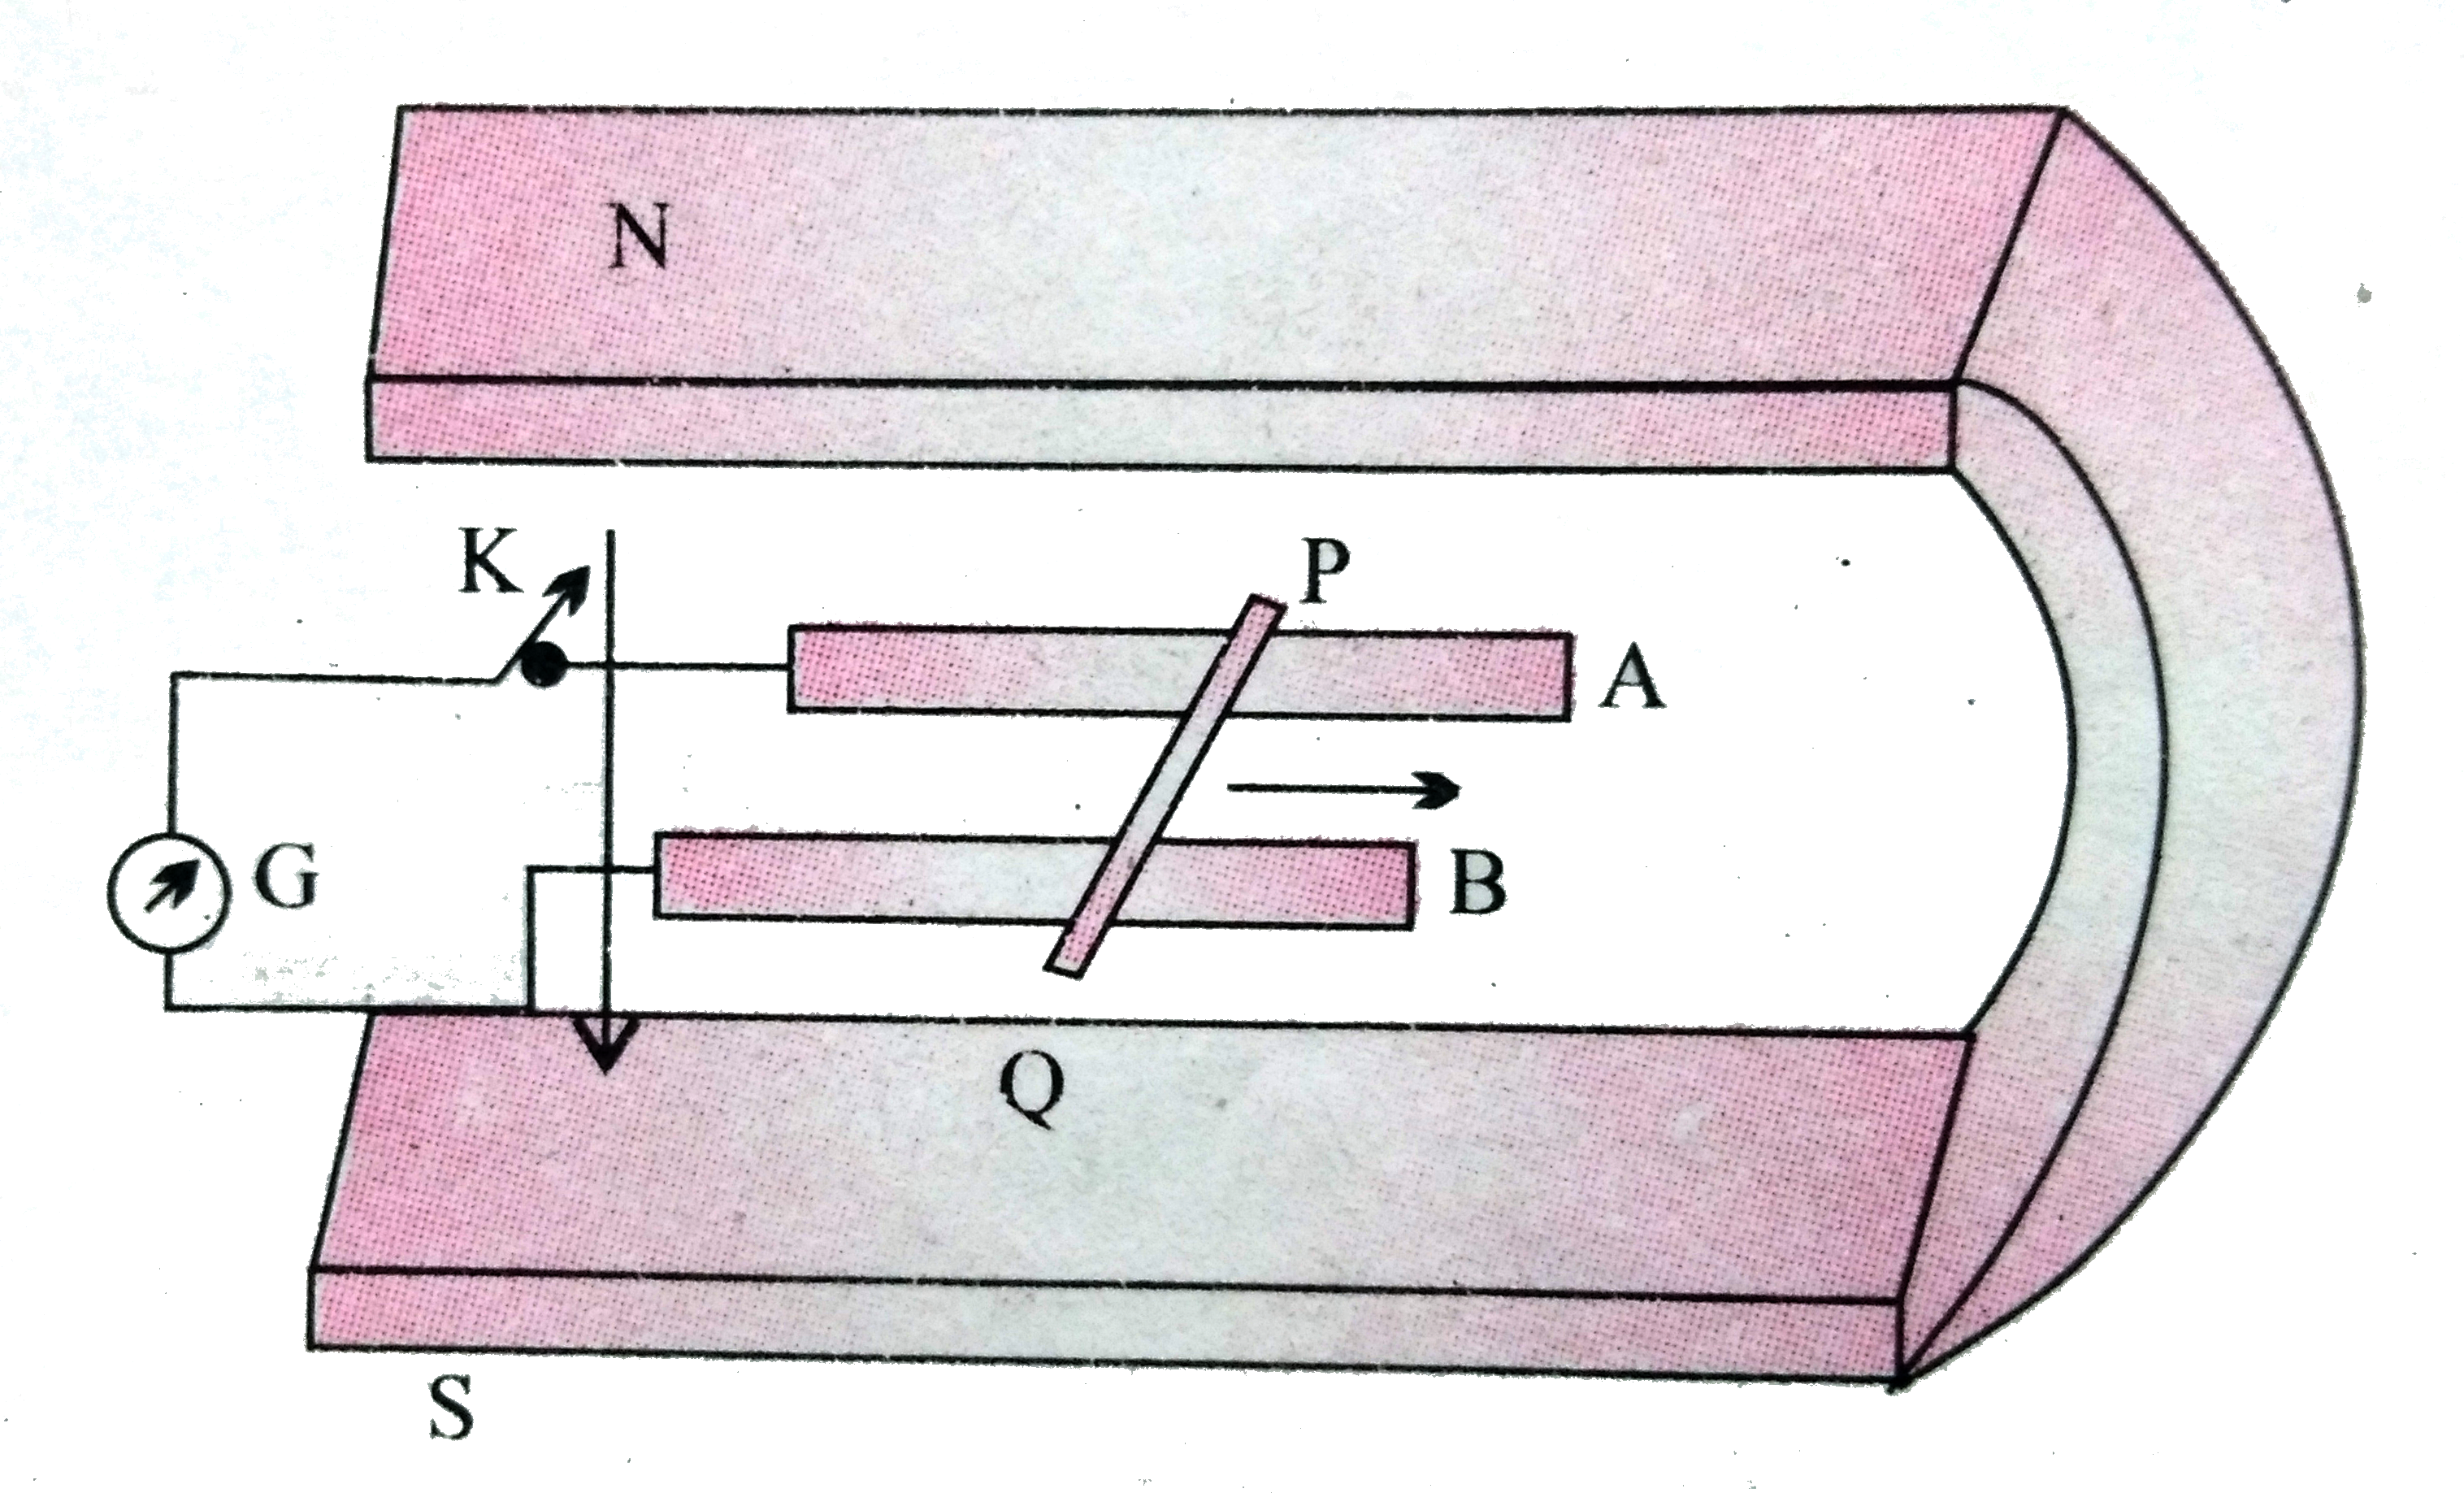 चित्र में एक धातु की  छड़ PQ  को दर्शाया गया है जो पटरियों AB पर रखी है तथा एक स्थायी चुम्बक के ध्रुवो के मध्य स्थित है । पटरियाँ , छड़ एवं चुंबकीय  क्षेत्र परस्पर  अभिलंबवत  दिशाओ में है ।एक गैल्वेनोमीटर ( धारामापी ) G  को पटरियों से एक स्विच K  की सहायता  से संयोजित  किया गया है । छड़ की लम्बाई 15  सेमी , B = 0.50 T  तथा  पटरियों , छड़ धारामापी से बने बंद लूप का प्रतिरोध =  9.0  mOmega   है । क्षेत्र  को एकसमान  मान ले ।    यदि छड़ 12 सेमी /से  की चाल  से दर्शायी गयी दिशा में गतिमान है तो बंद परिपथ में कितनी शक्ति का ऊष्मा  के रूप में क्षय  होगा ? इस शक्ति का स्रोत्र क्या है ?